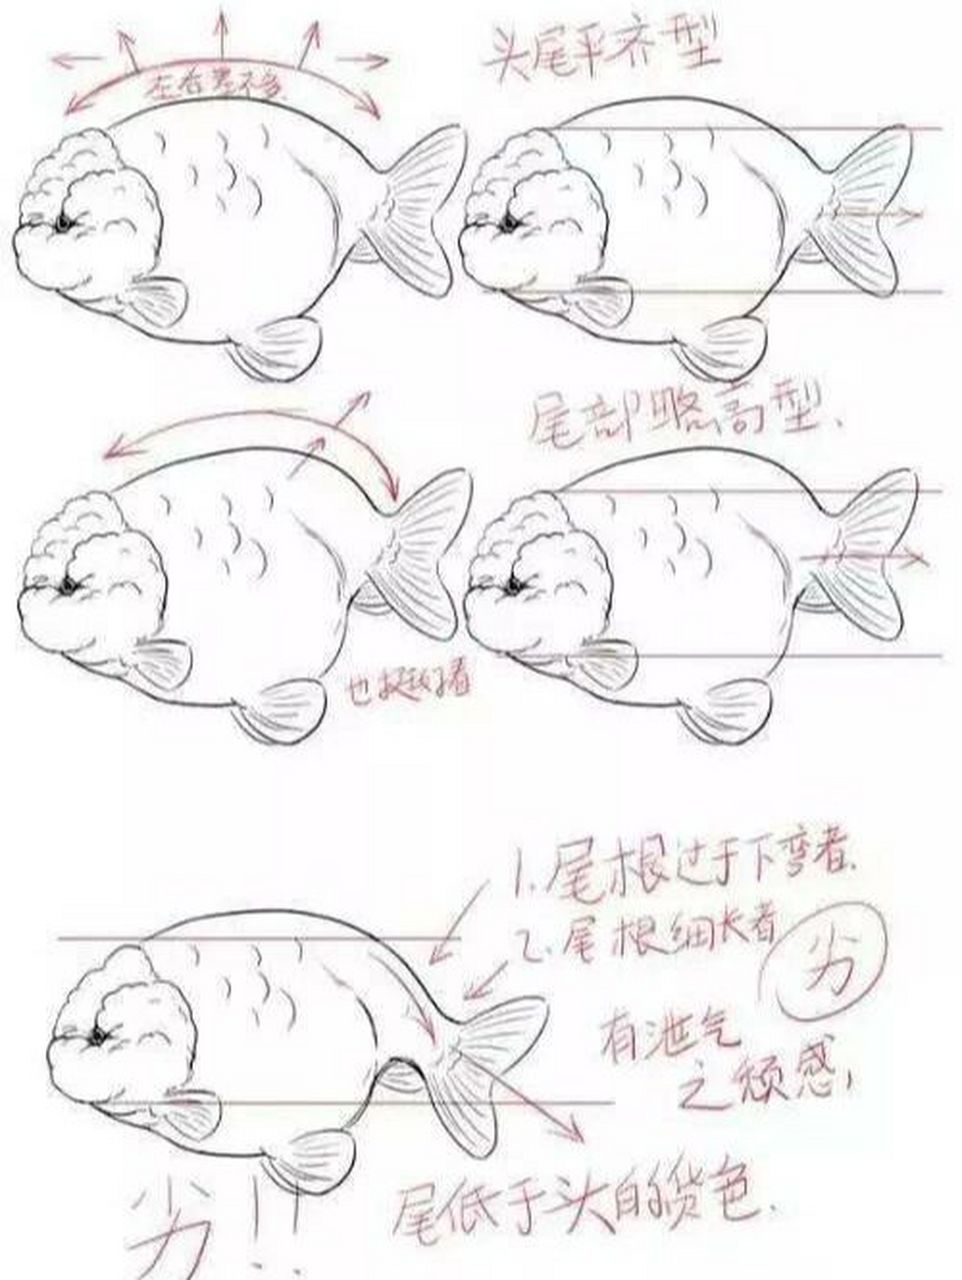 兰寿金鱼挑选的一些小建议,希望能帮到你 在传统蛋种金鱼中,俯视居多